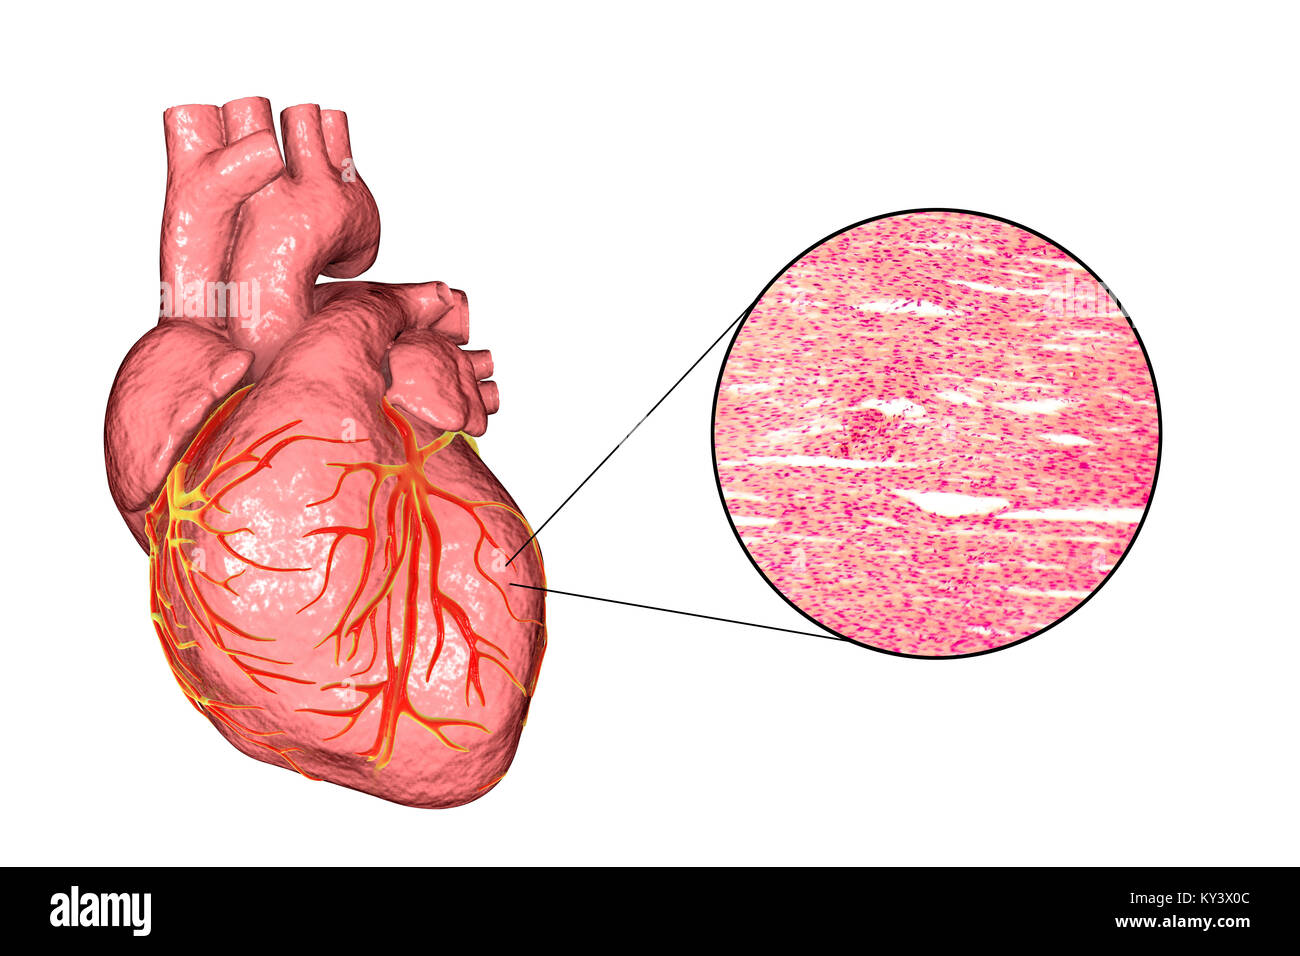 Equipo ilustración de un corazón humano y Micrografía de luz del músculo del corazón. El músculo cardíaco está formado por células fusiformes agrupadas en paquetes irregulares. Los límites entre las células individuales son débilmente visible aquí. Cada celda contiene un núcleo, visibles como manchas de color oscuro. El músculo cardíaco es un tejido muscular especializado que pueden contraerse de forma regular y continua, sin cansancio. Foto de stock